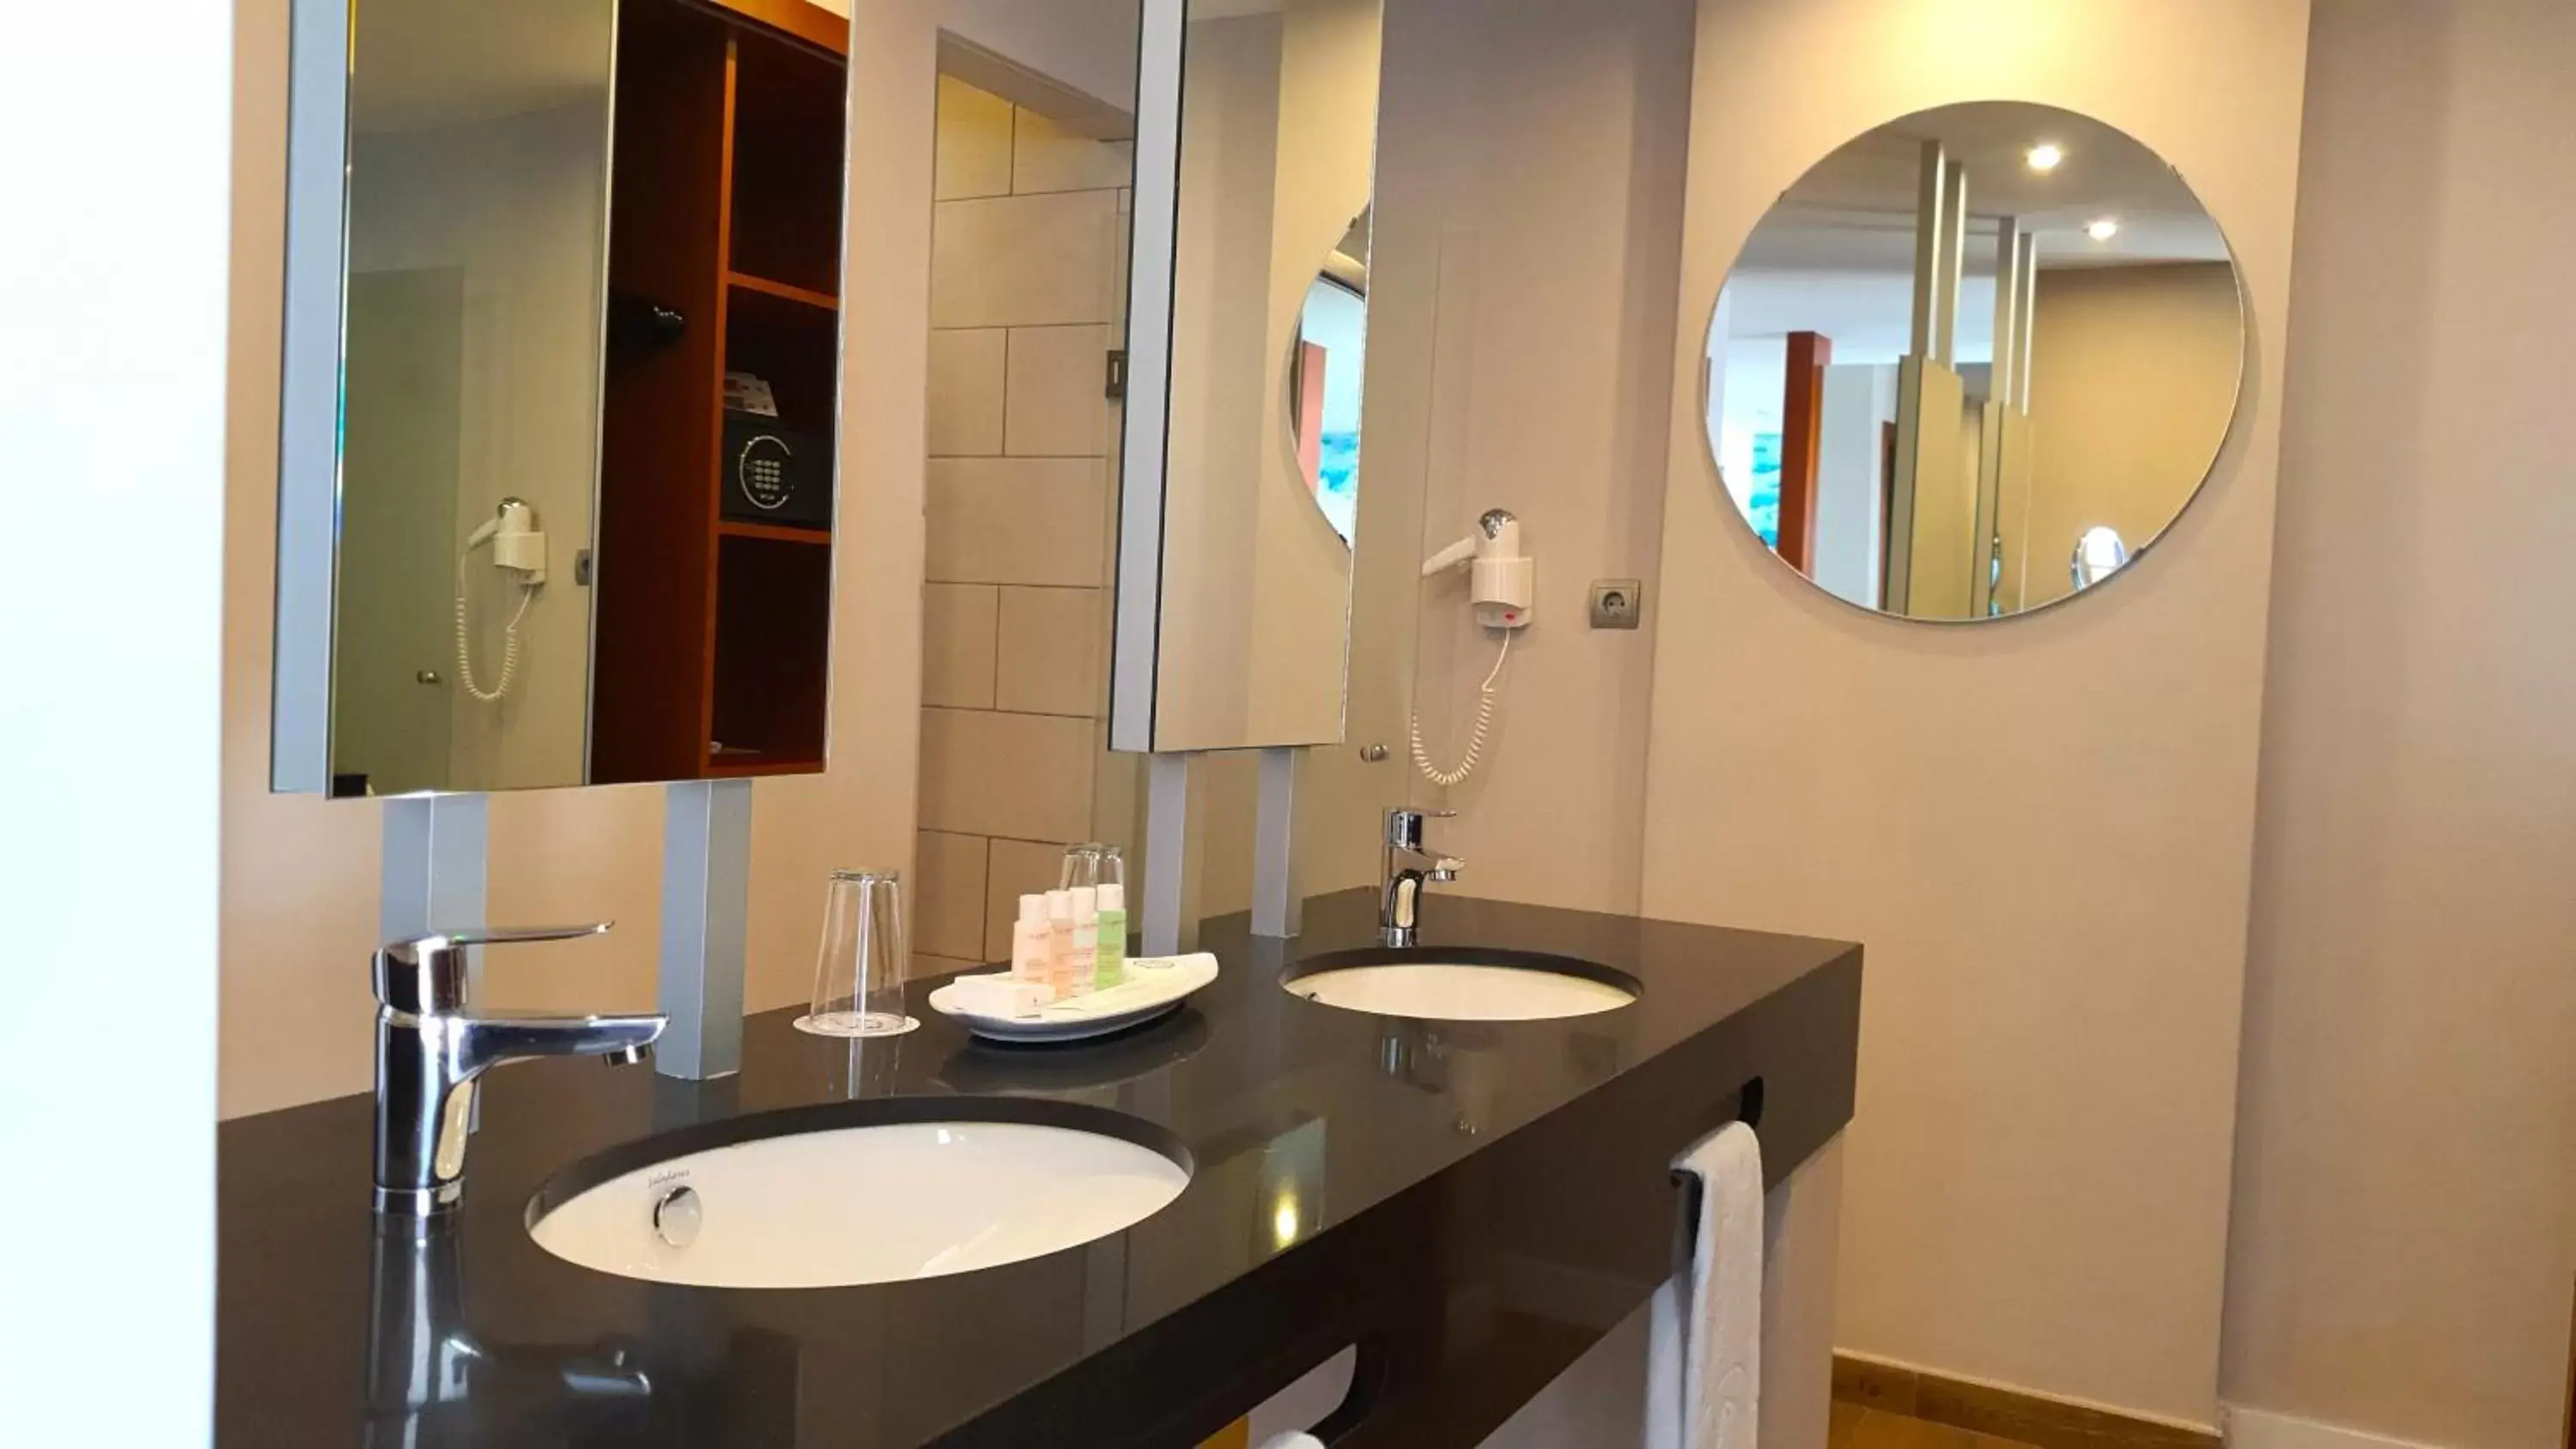 Bathroom in Hotel Costa Calero Thalasso & Spa